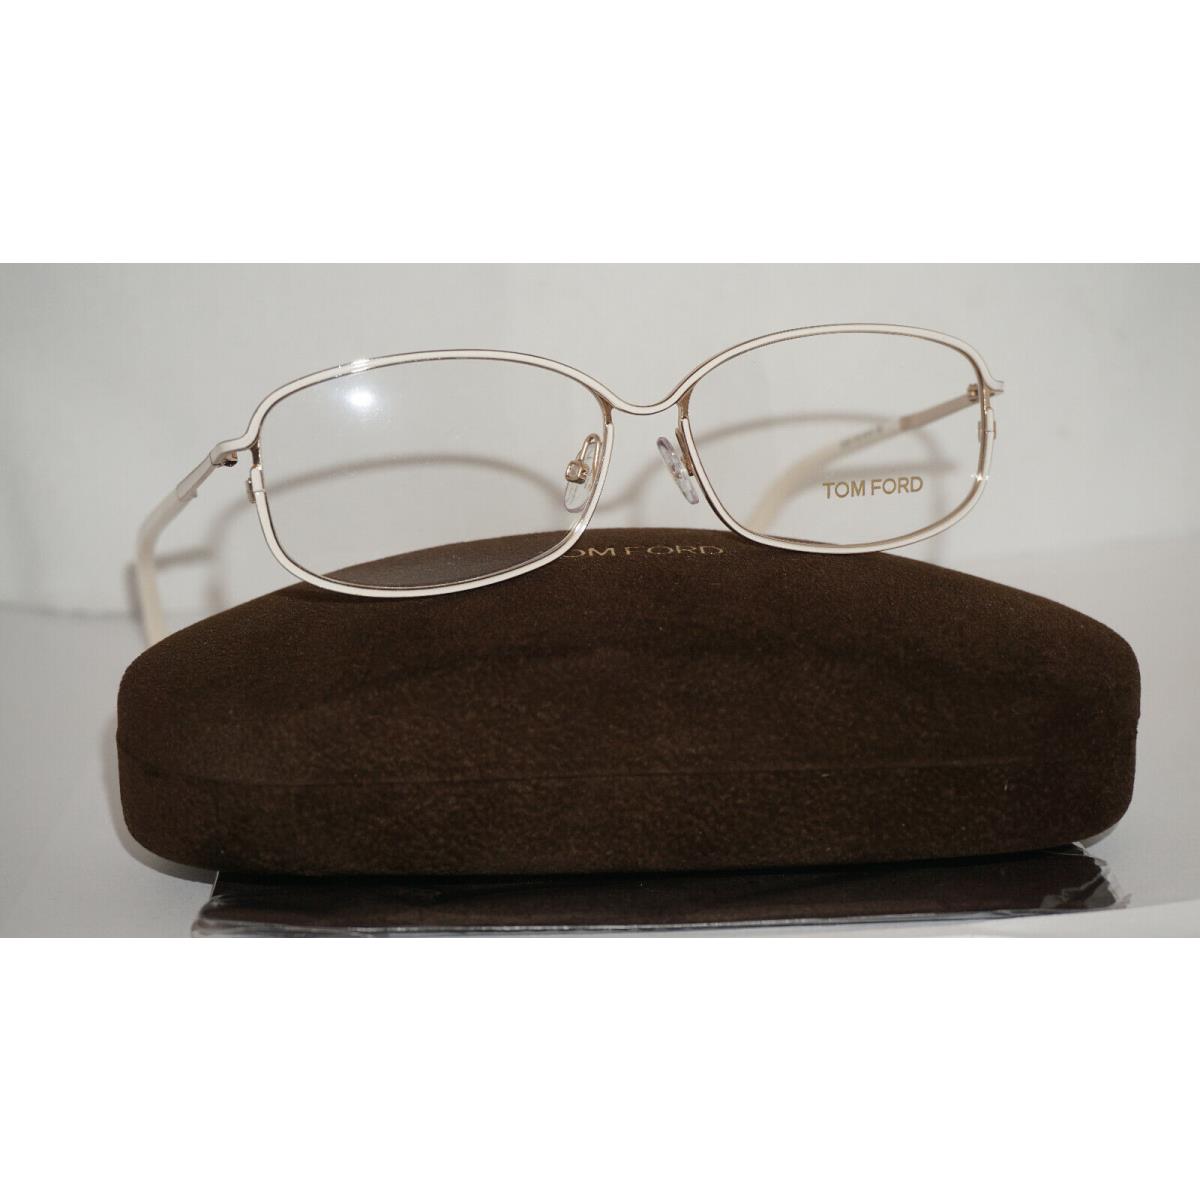 Tom Ford Frame Eyeglasses White Gold TF5191 028 54 13 135